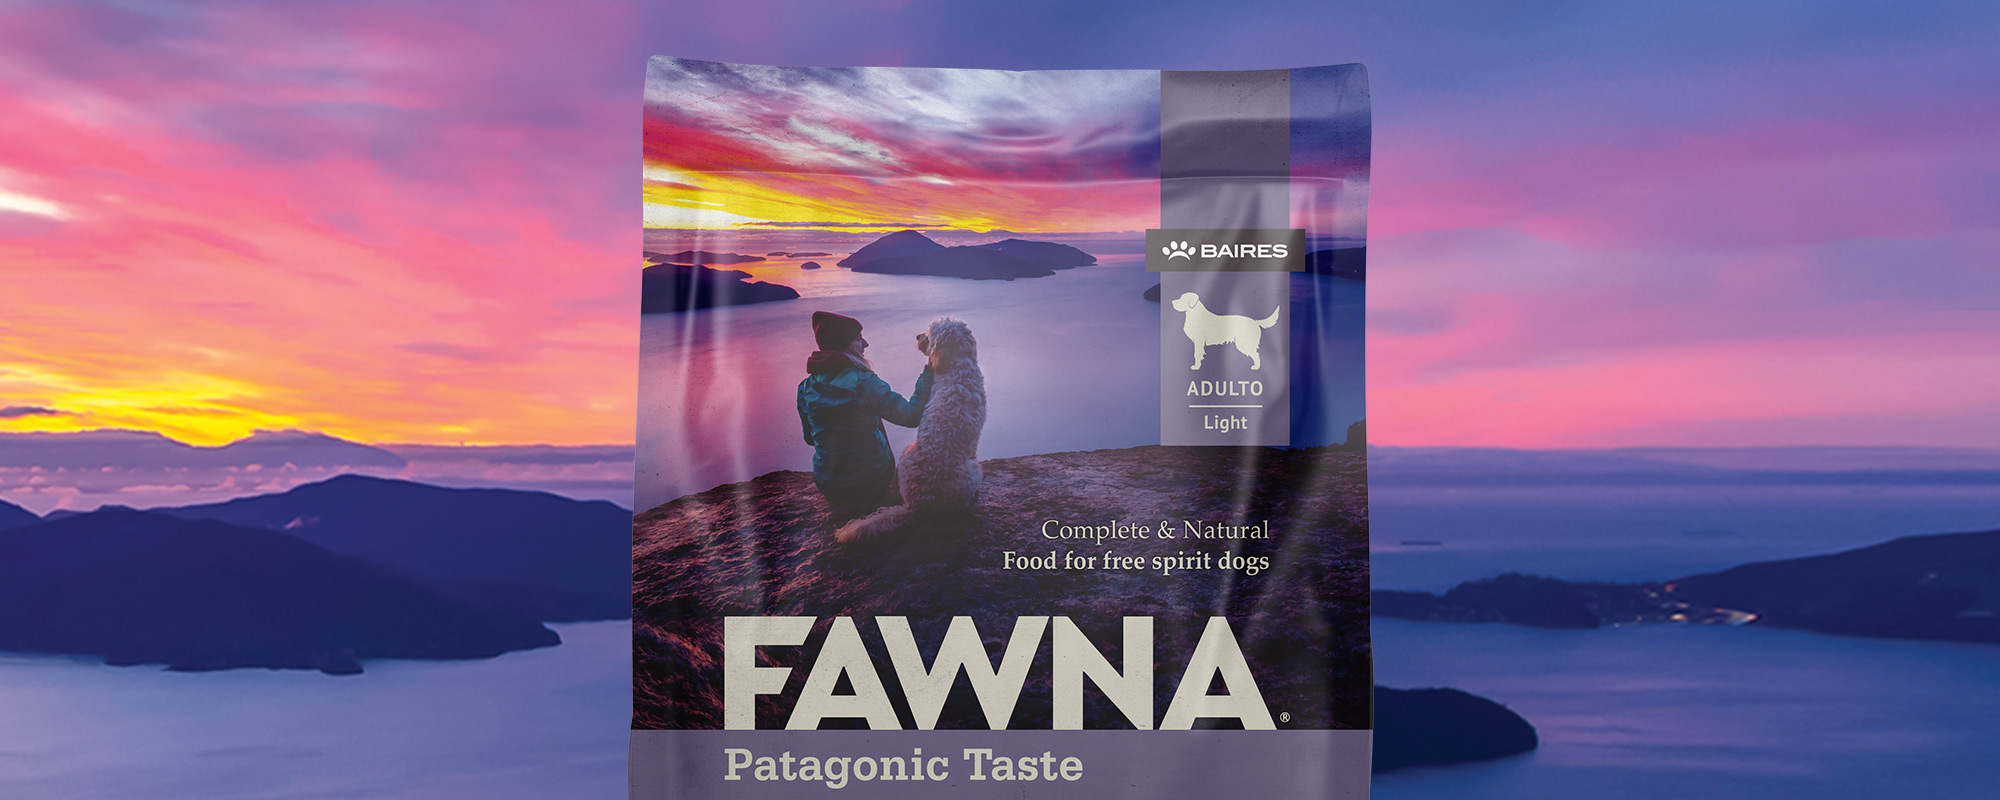 Tridimage diseño de packaging marca Fawna nutrición para mascotas